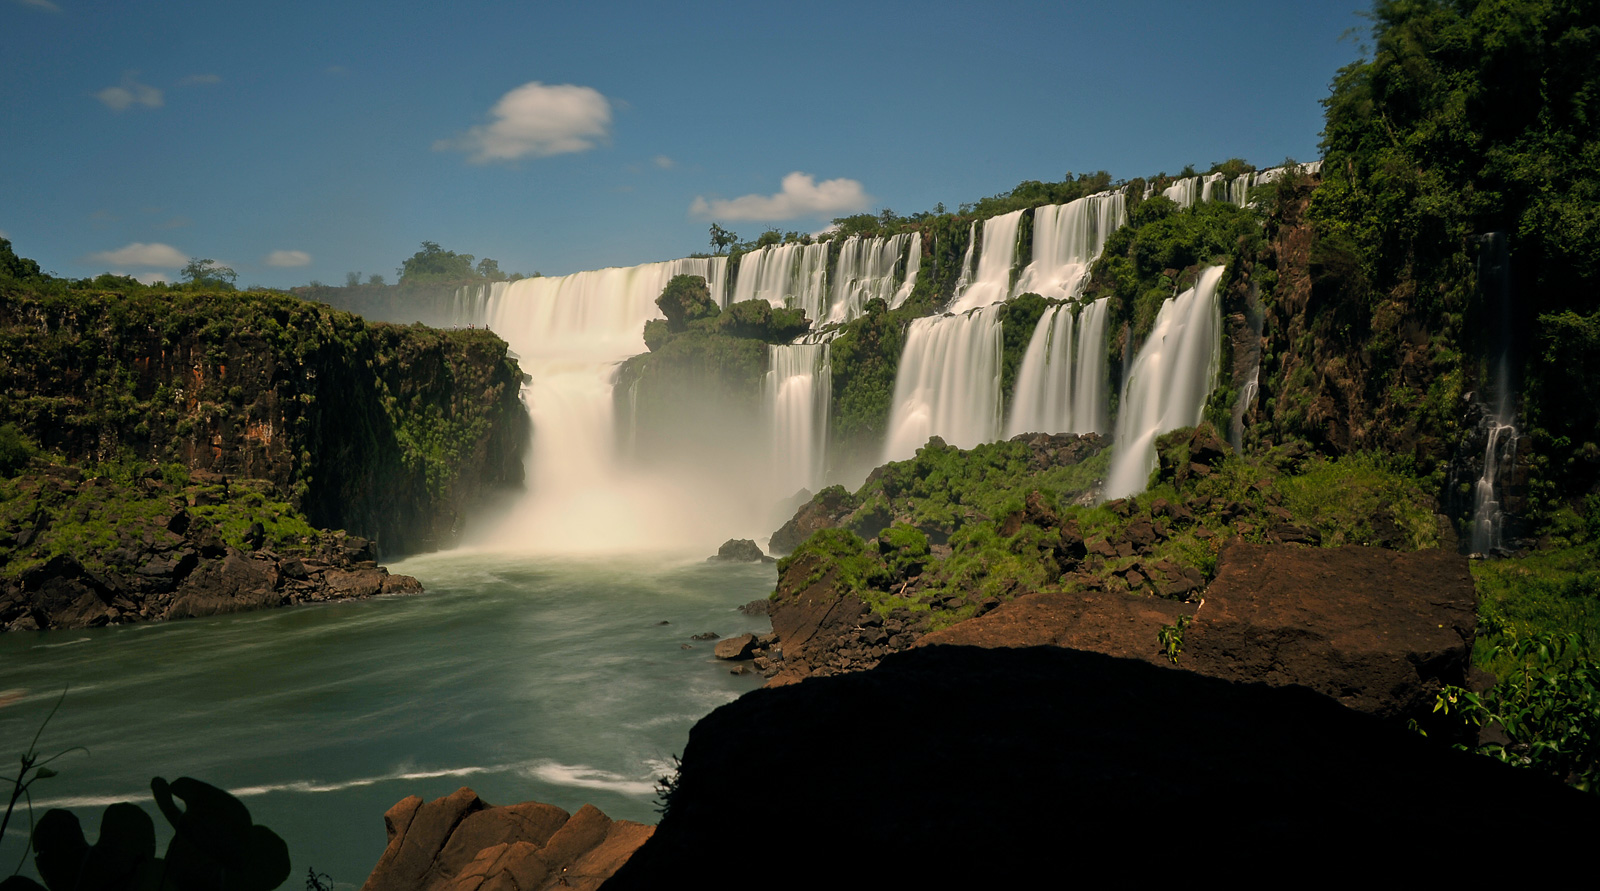 Cataratas del Iguazu [28 mm, 13.0 sec at f / 22, ISO 200]